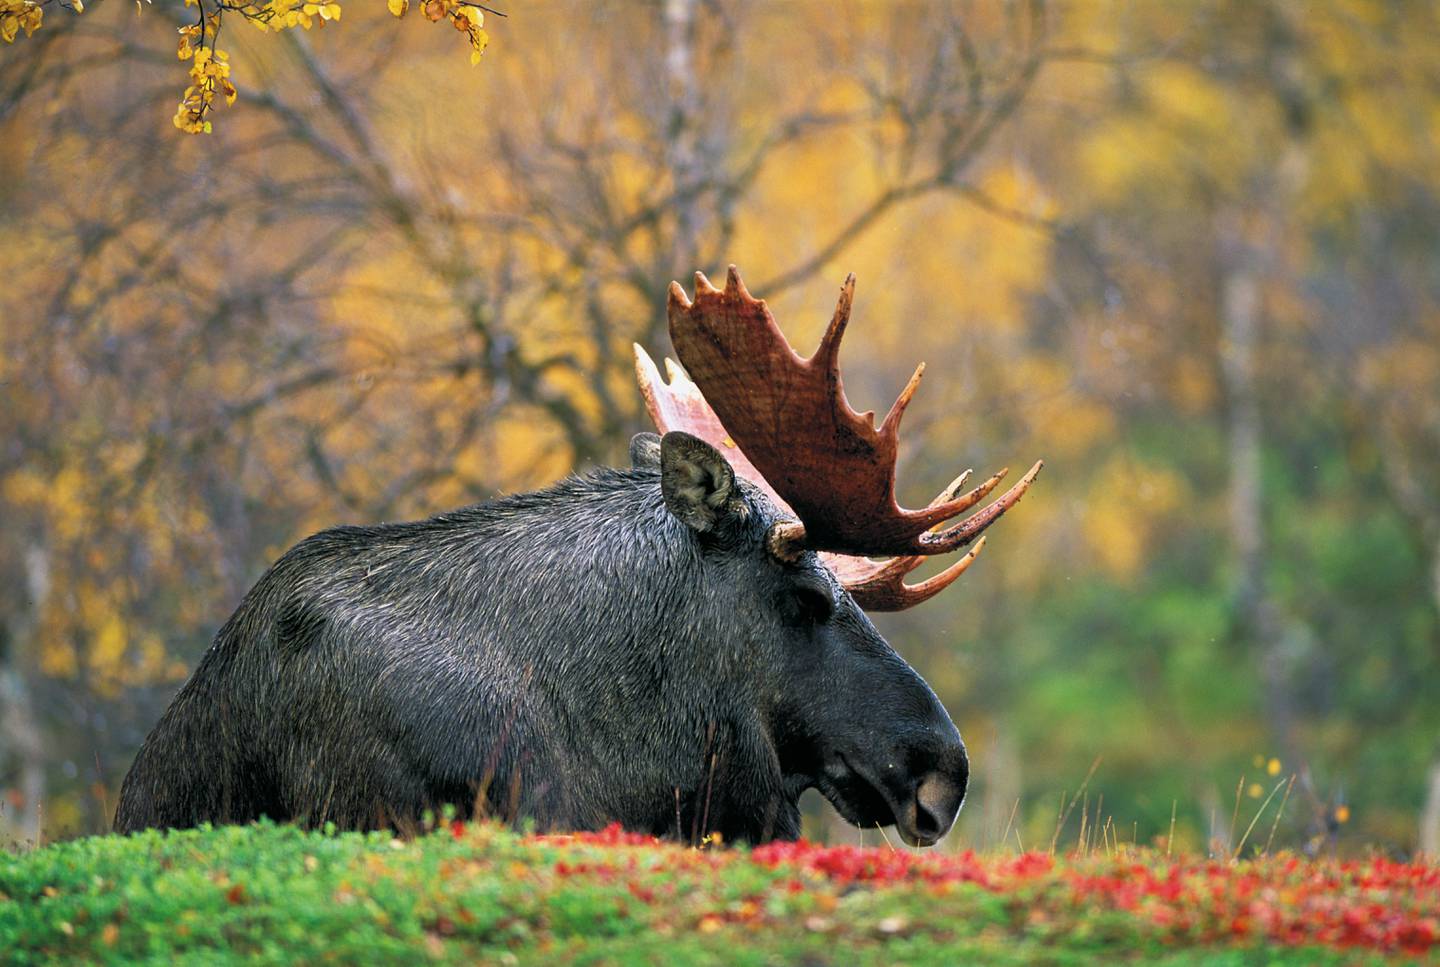 Store elger kan bli et trekkplaster for turister, hvis det blir opprettet en nasjonalpark med jaktforbud, mener naturfotografen Asgeir Helgestad.